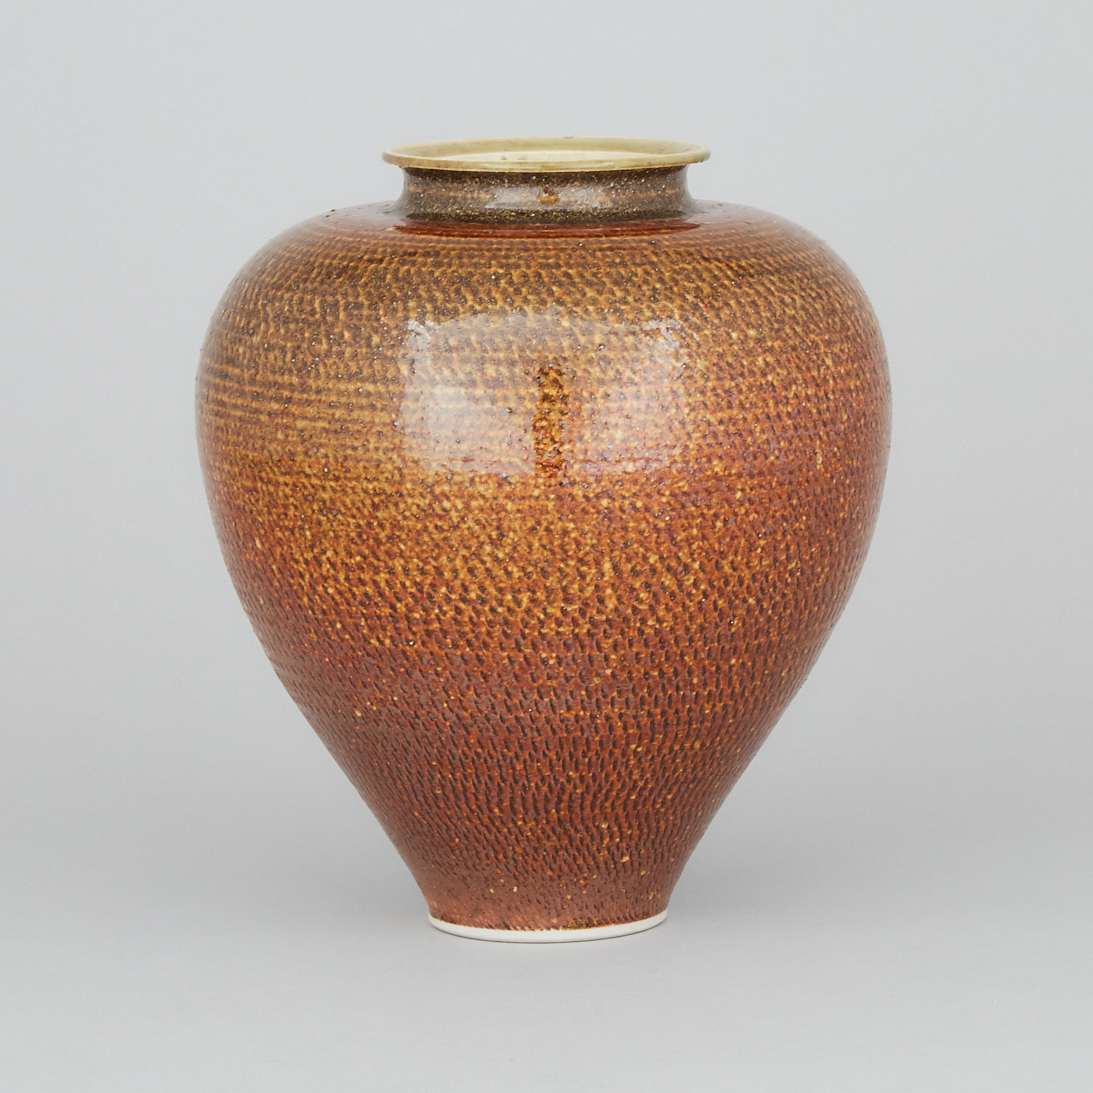 Joseph Panacci (Canadian, b.1954), Glazed Porcelain Vase, 1992